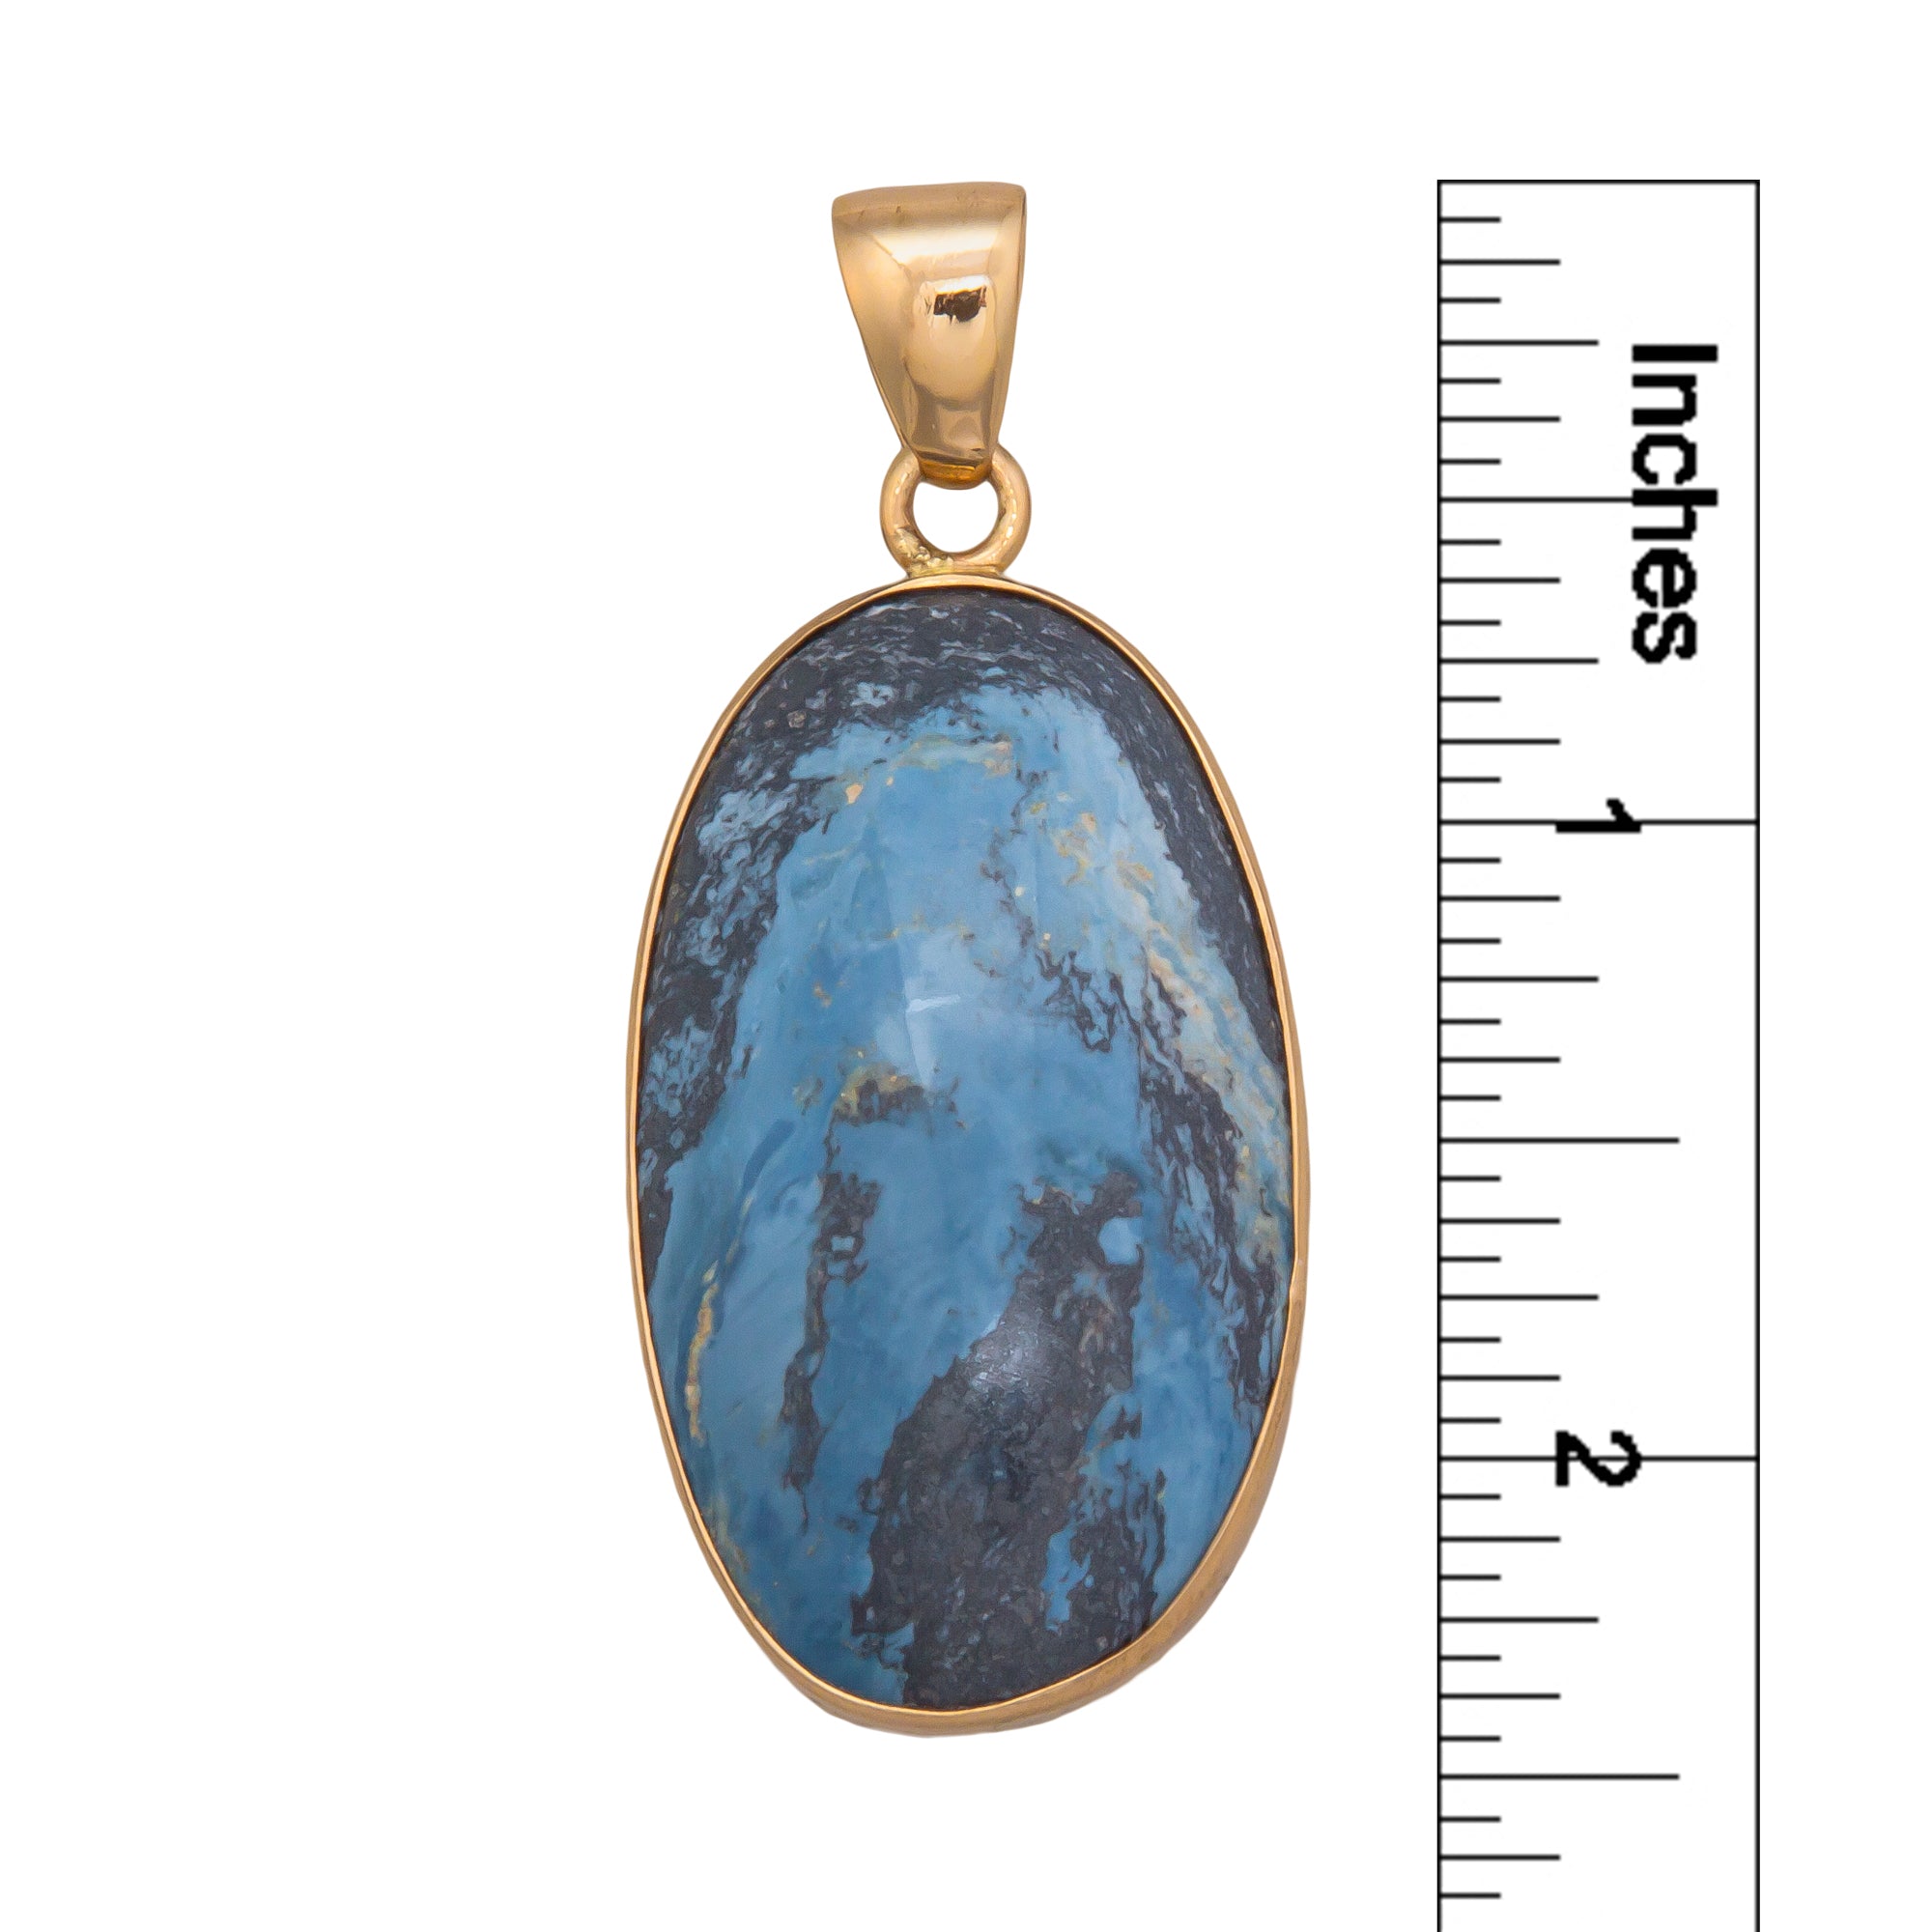 Charles Albert Jewelry - Alchemia Aztec Lapis Pendant - Measurements